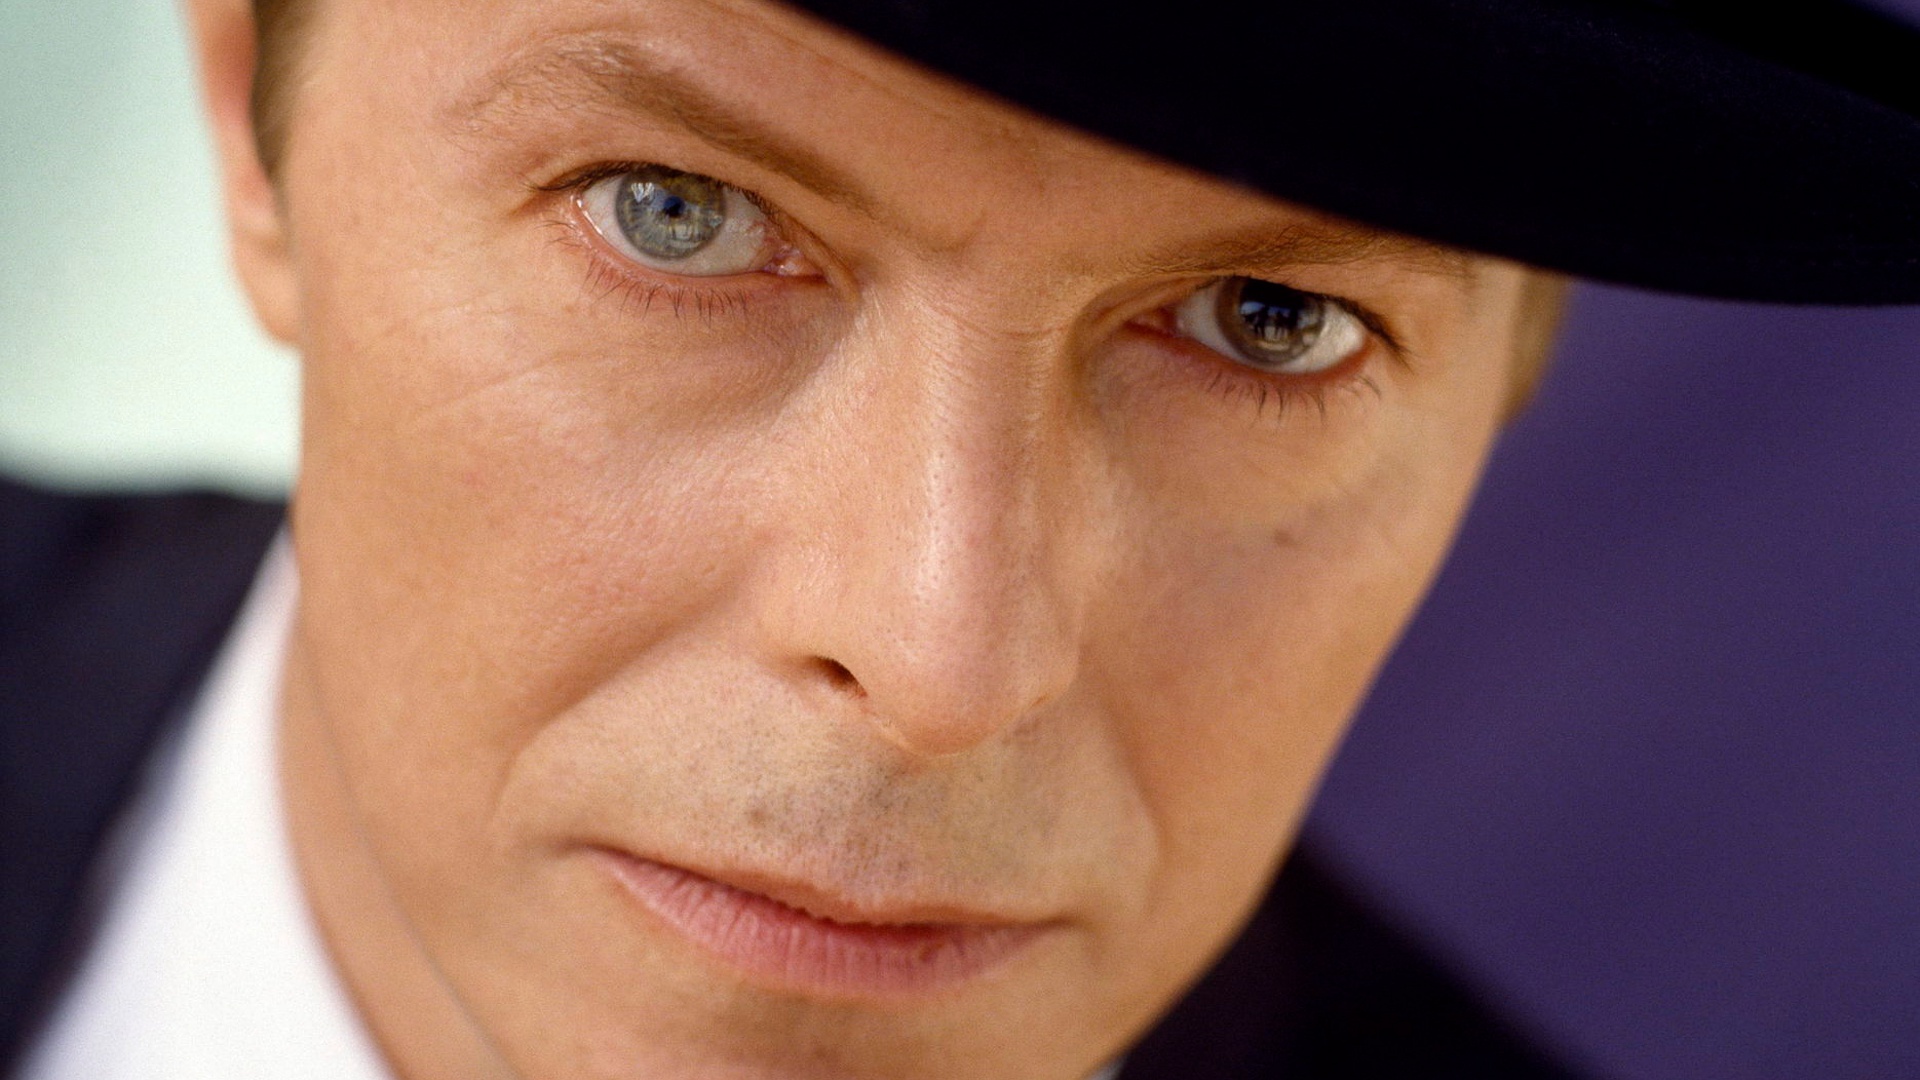 Descarga gratuita de fondo de pantalla para móvil de Música, David Bowie.